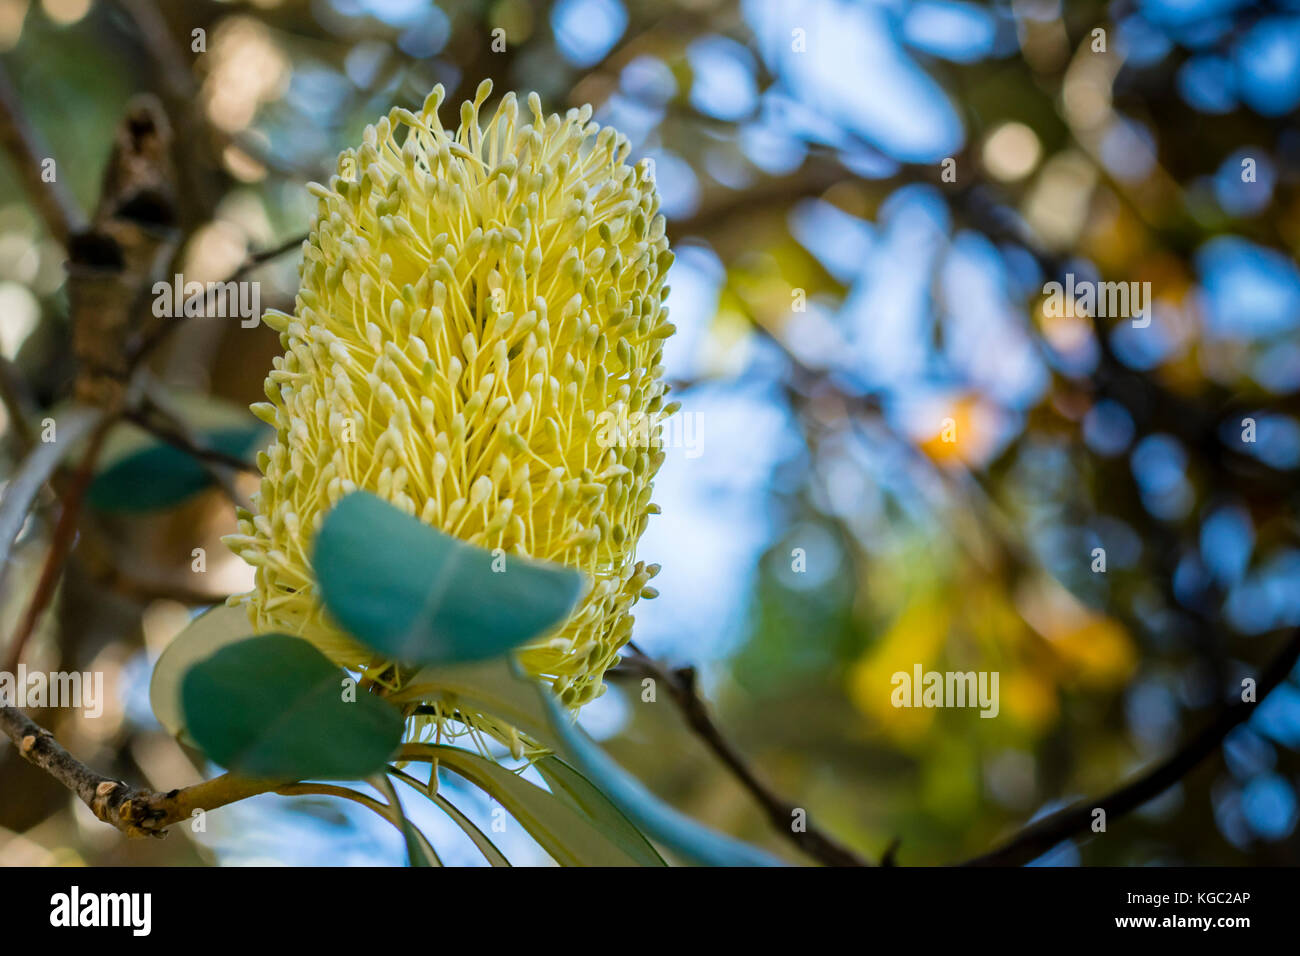 Giallo australian banksia fiore su albero, closeup, uno sfondo morbido. macro nativo di impianto australiano, banksia fiore, basso angolo visuale, bokeh di fondo. Foto Stock